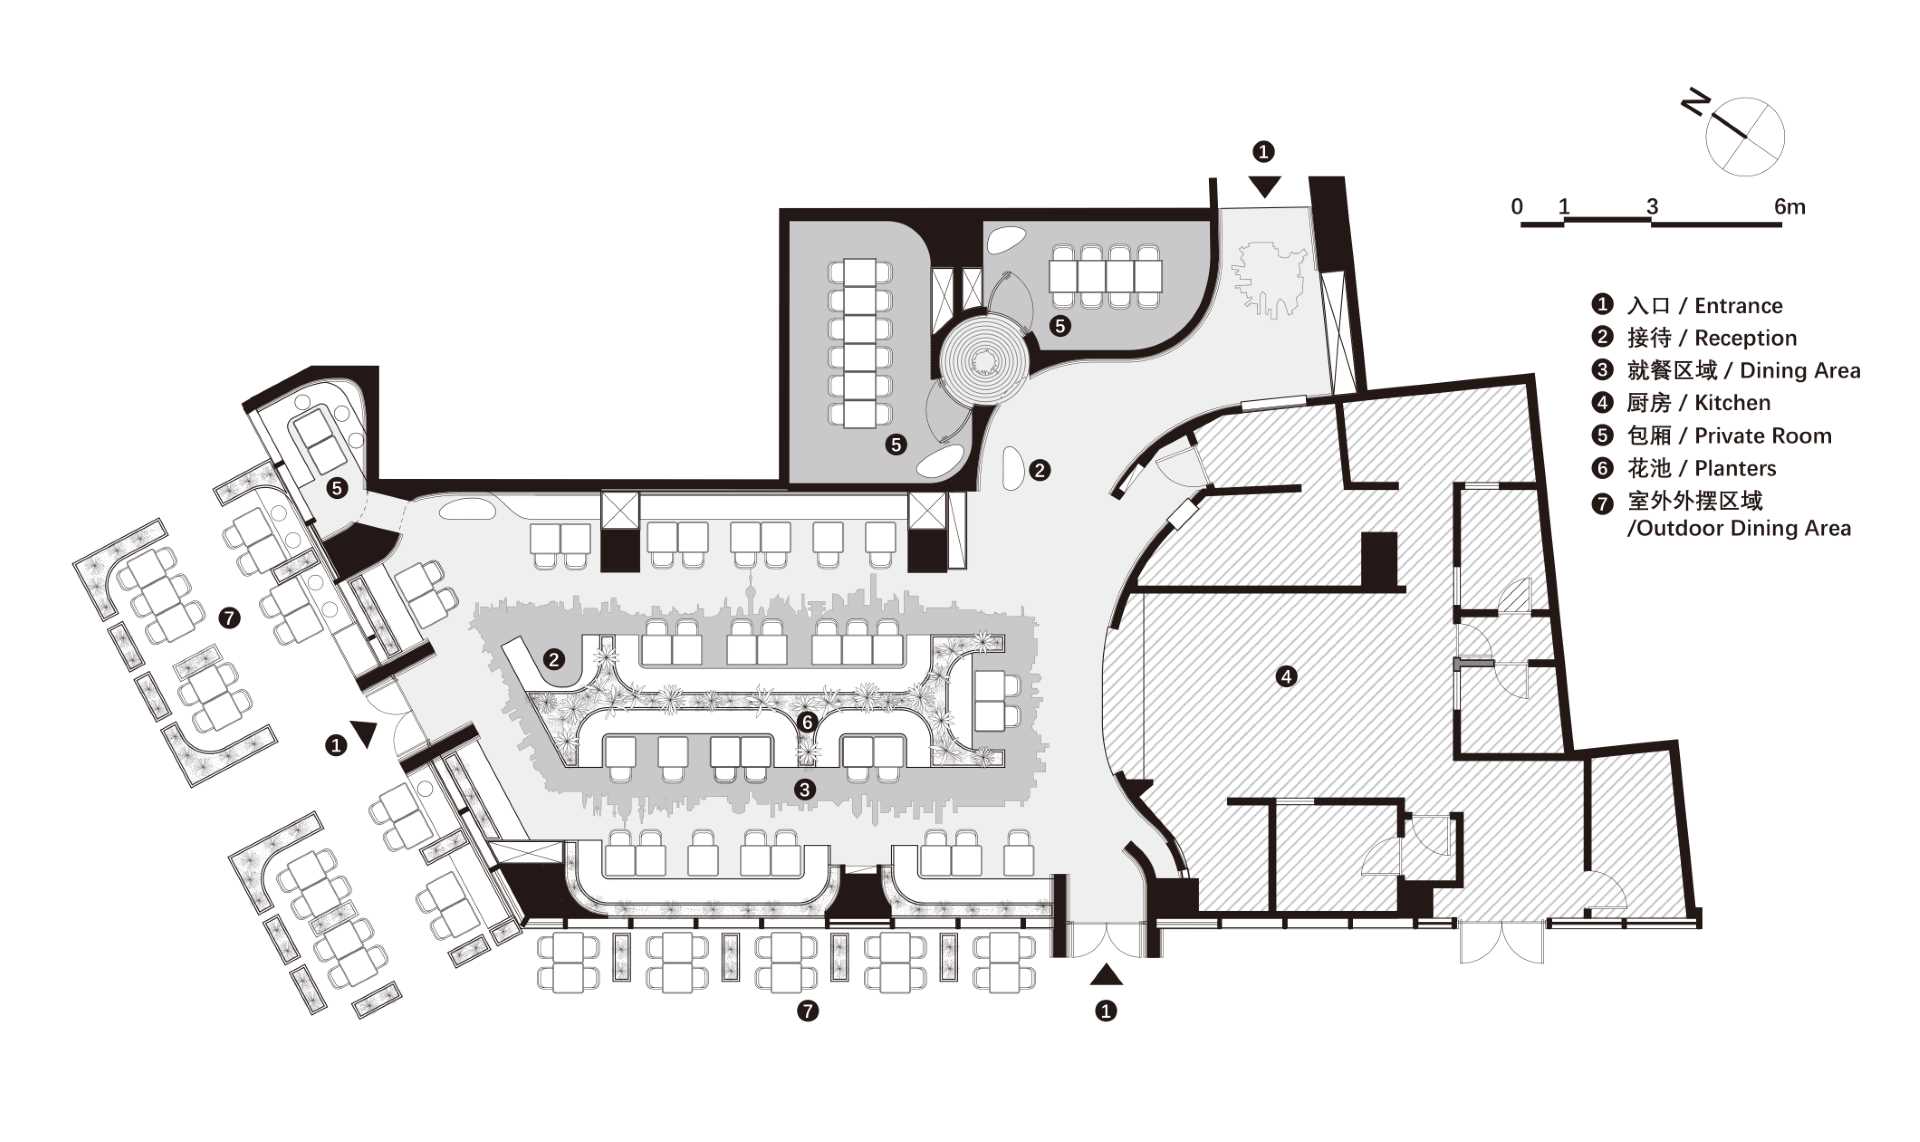 The floor plan of a modern restaurant.